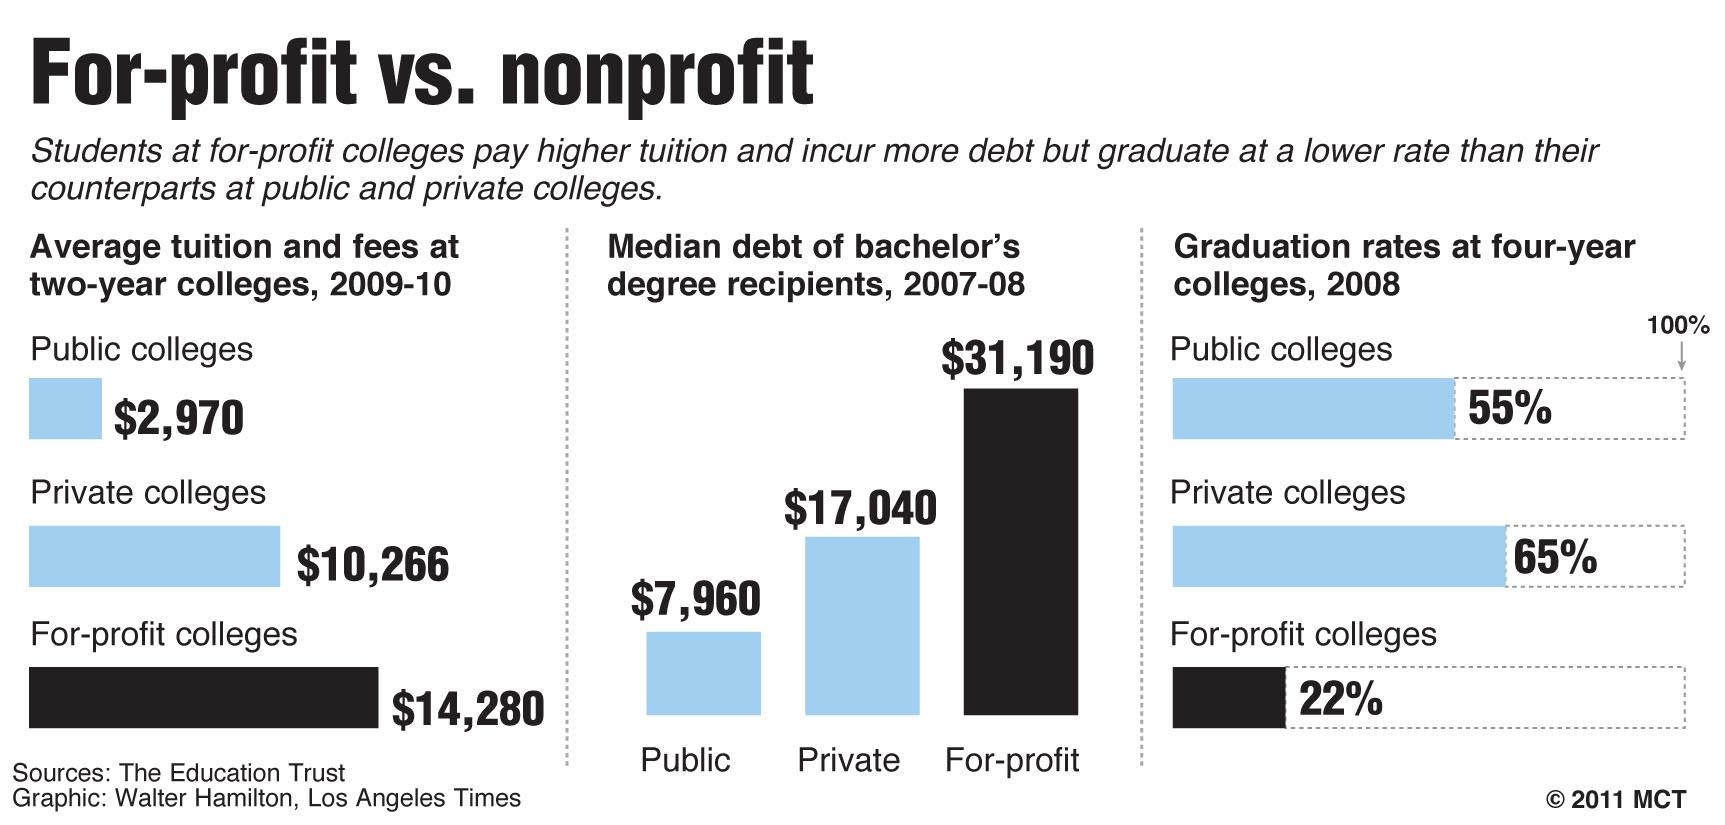 For-profit vs. nonprofit colleges